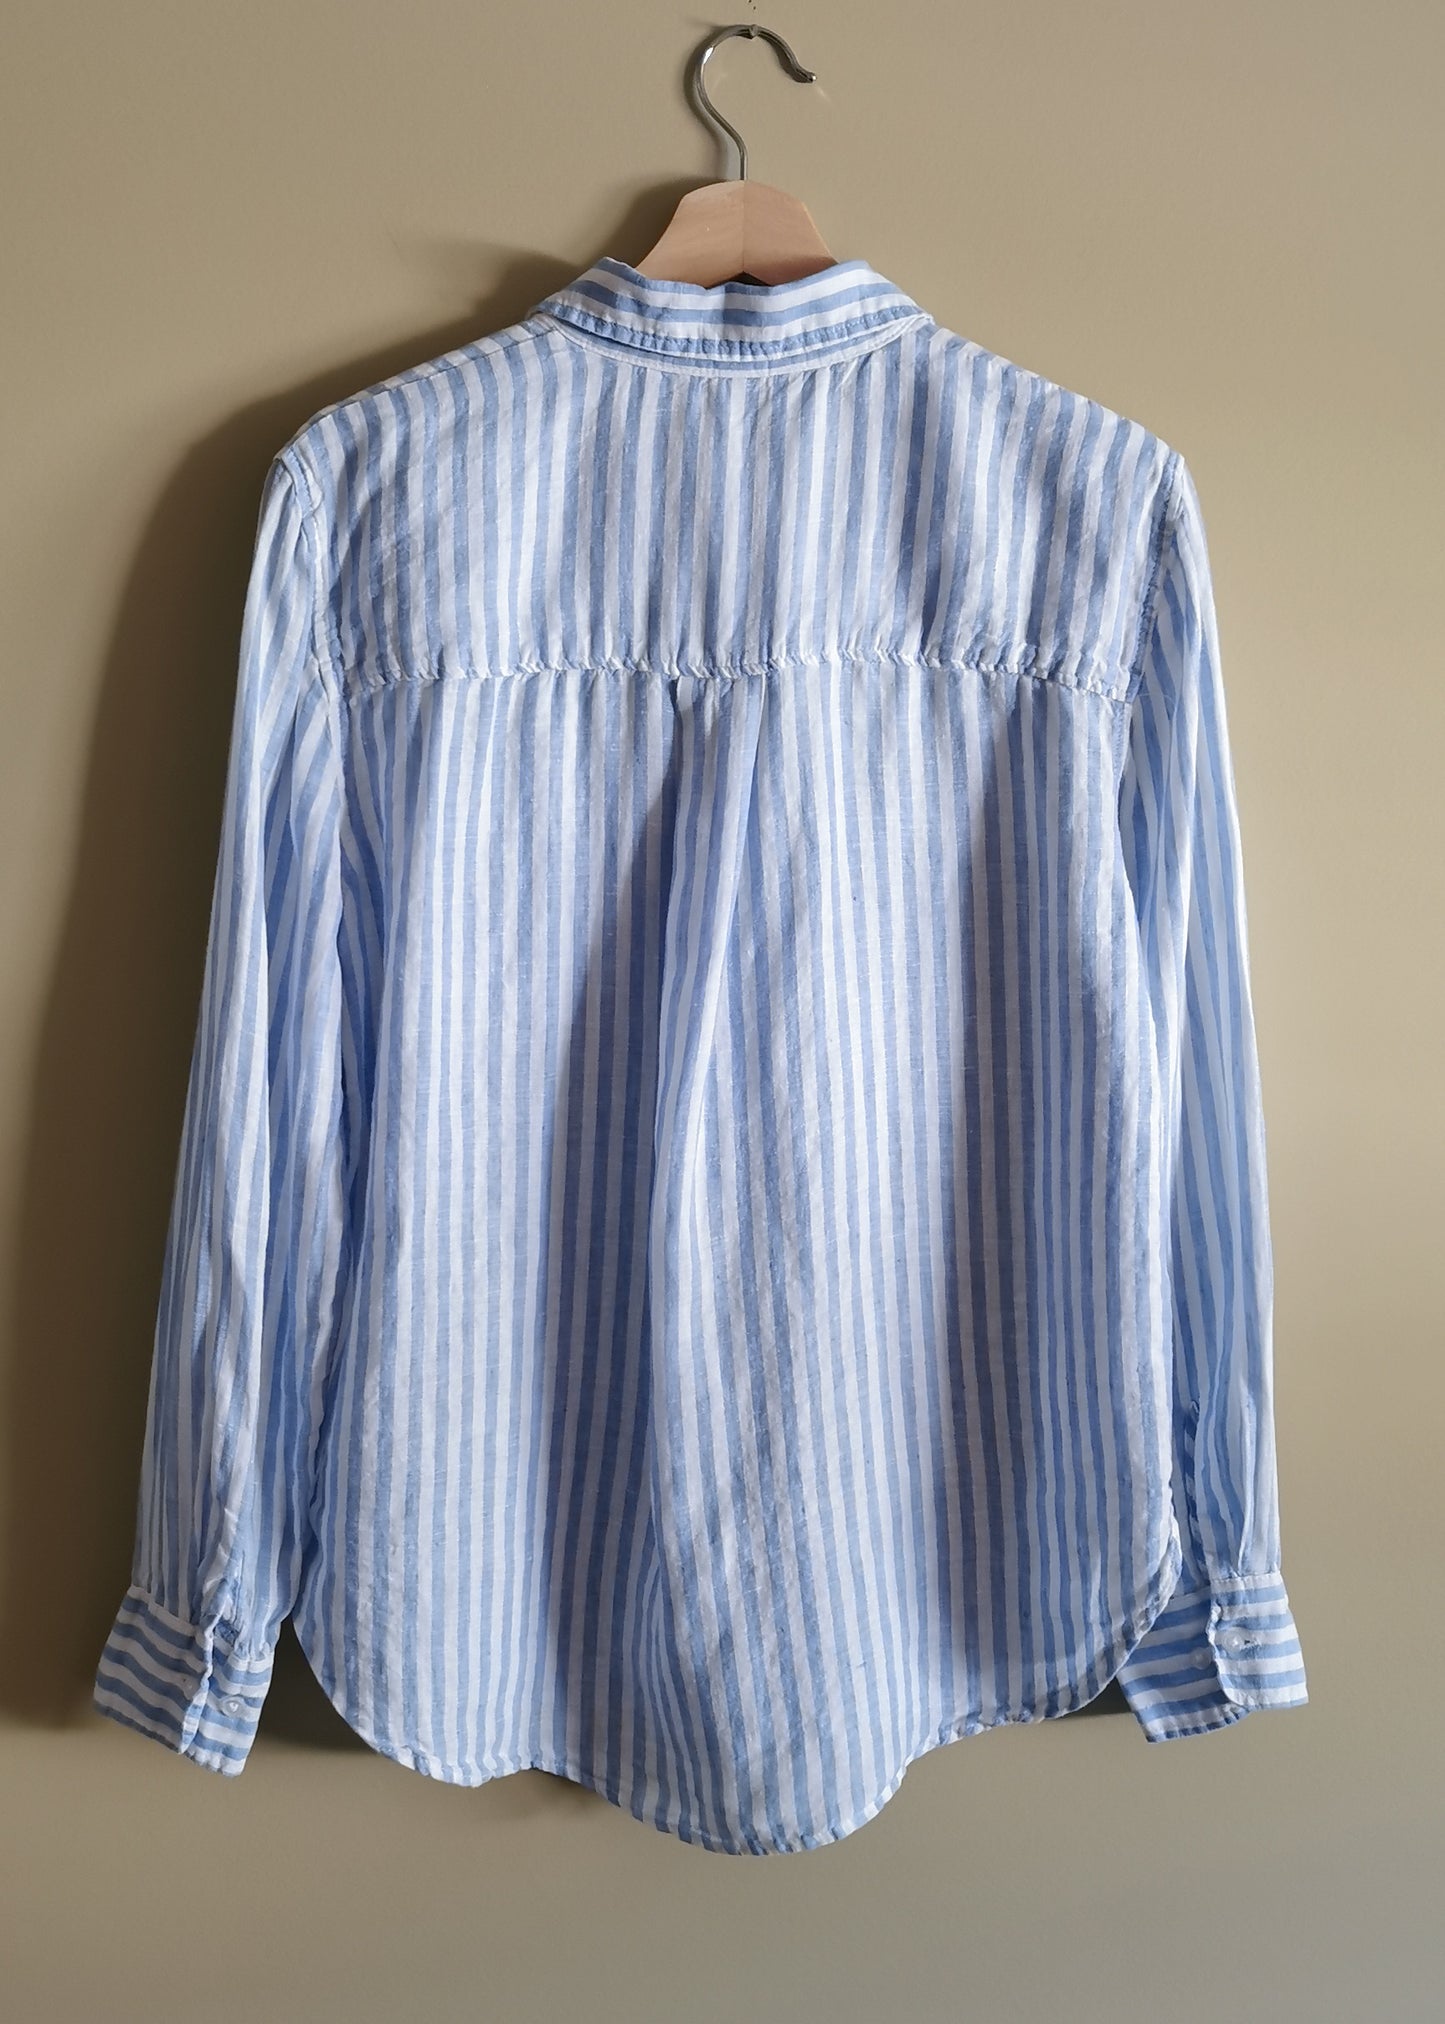 H&M Linen Shirt (S)